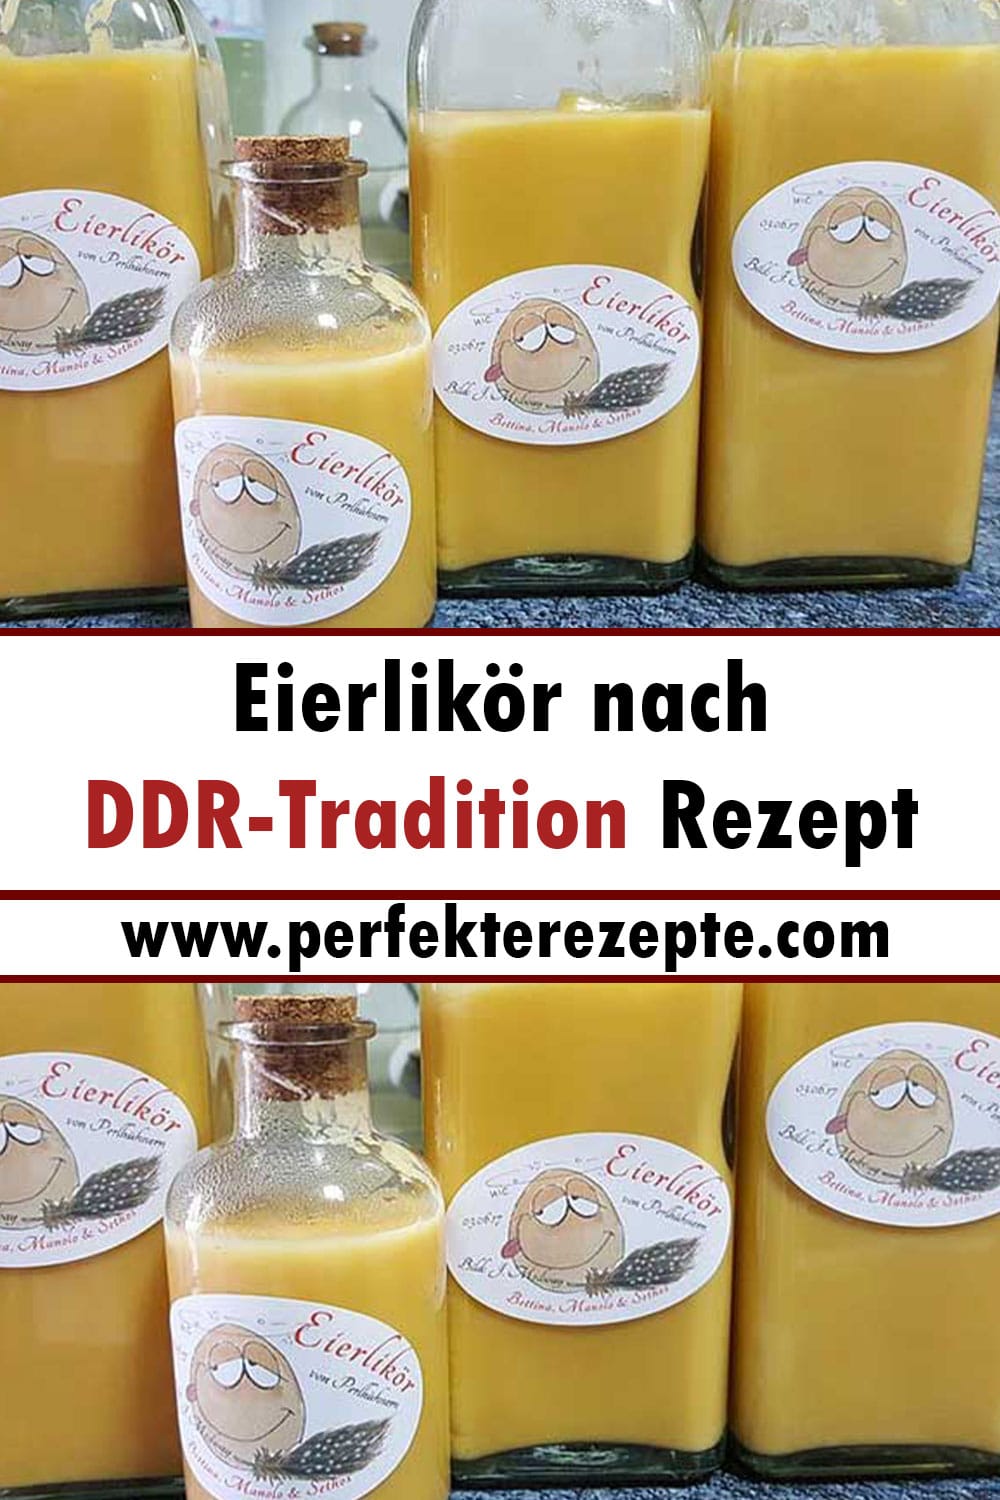 Eierlikör nach DDR-Tradition Rezept